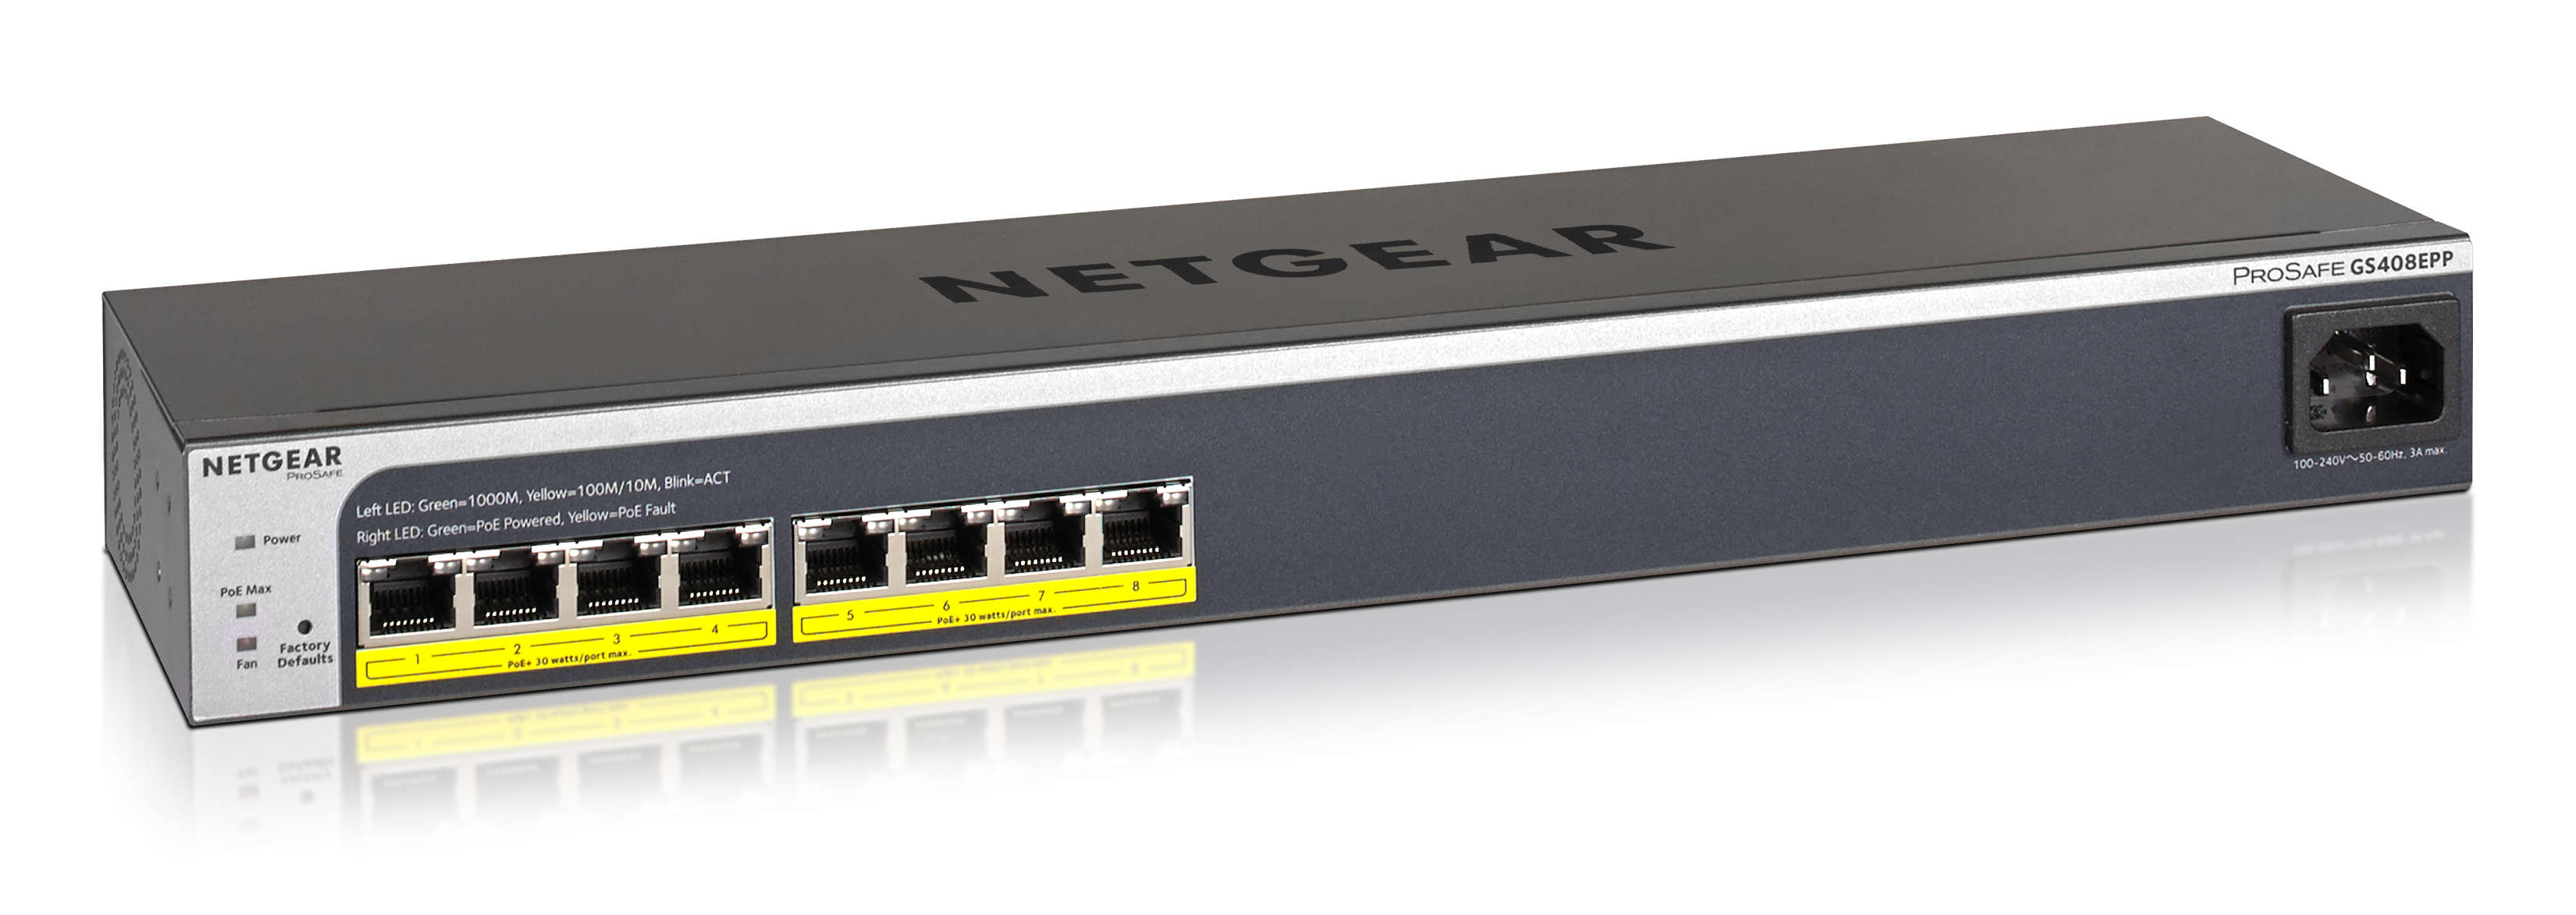 Rackmount Business Routers - NETGEAR